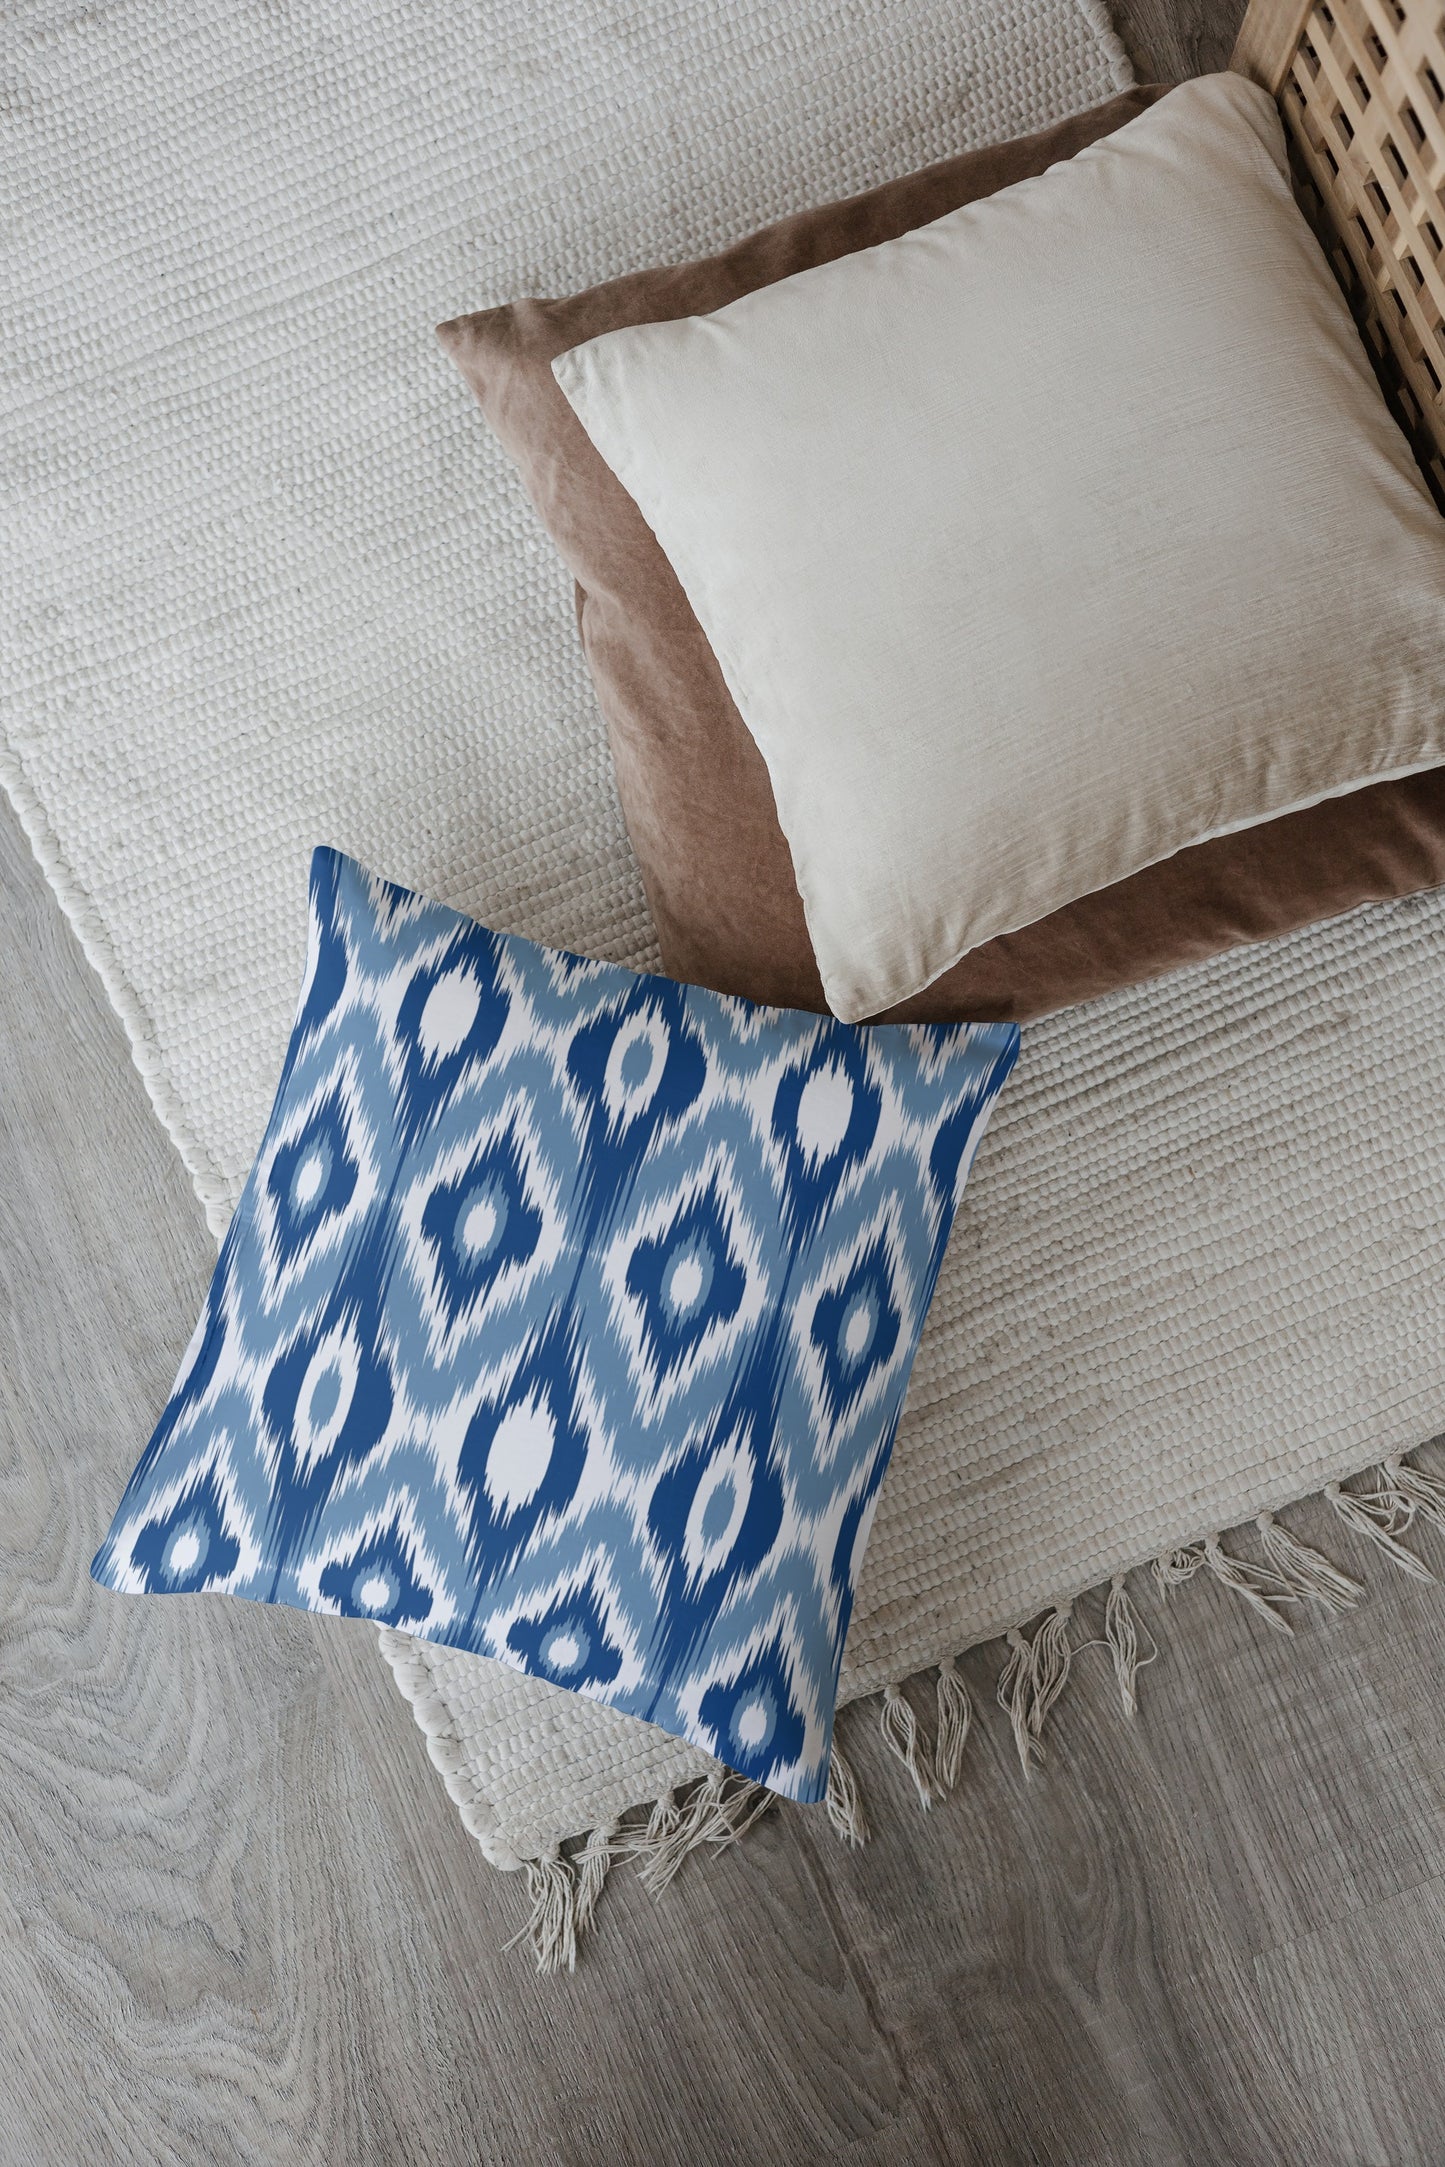 Cabrera Outdoor Pillows Blue & White